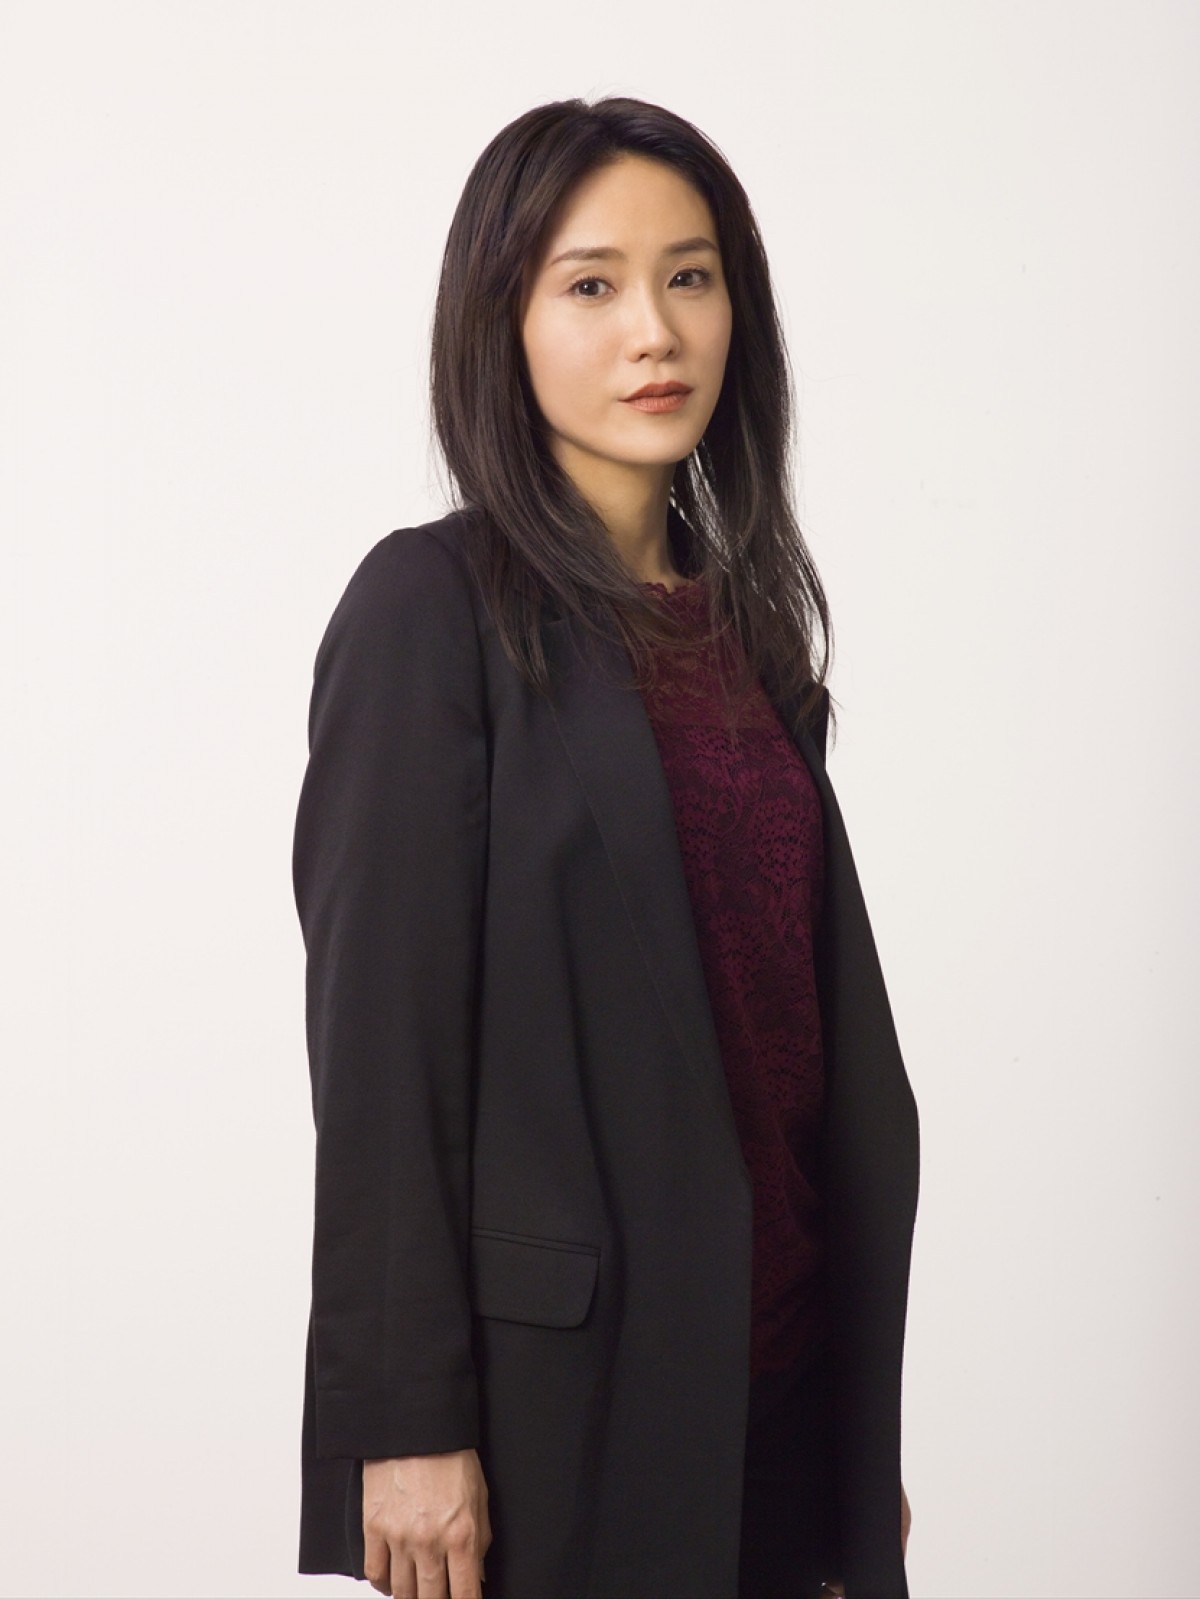 山口紗弥加、復讐劇『ブラックスキャンダル』でドラマ初主演